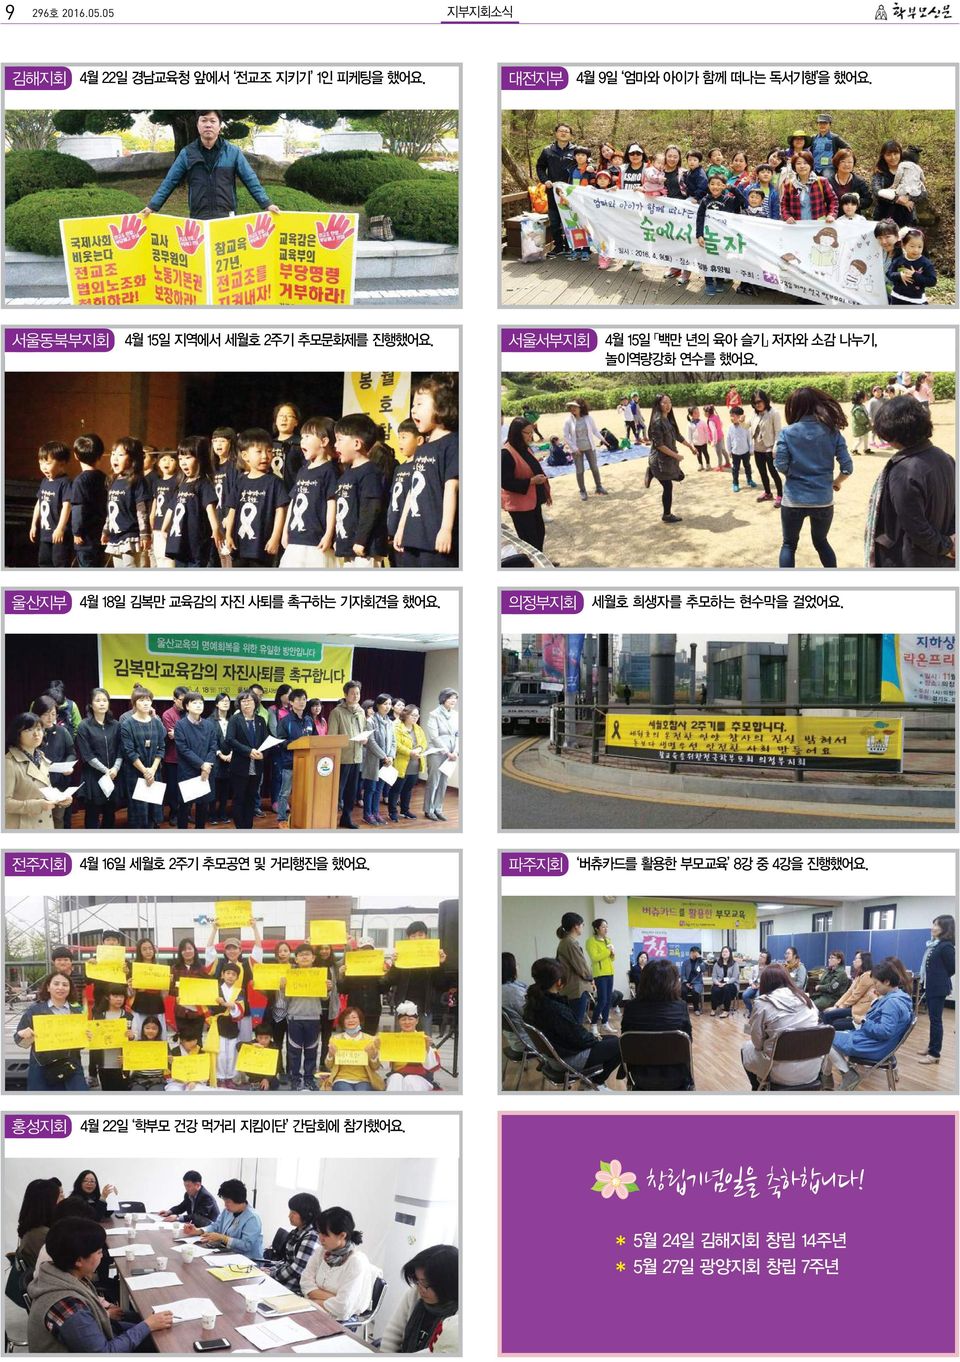 울산지부 4월 18일 김복만 교육감의 자진 사퇴를 촉구하는 기자회견을 했어요. 의정부지회 세월호 희생자를 추모하는 현수막을 걸었어요.